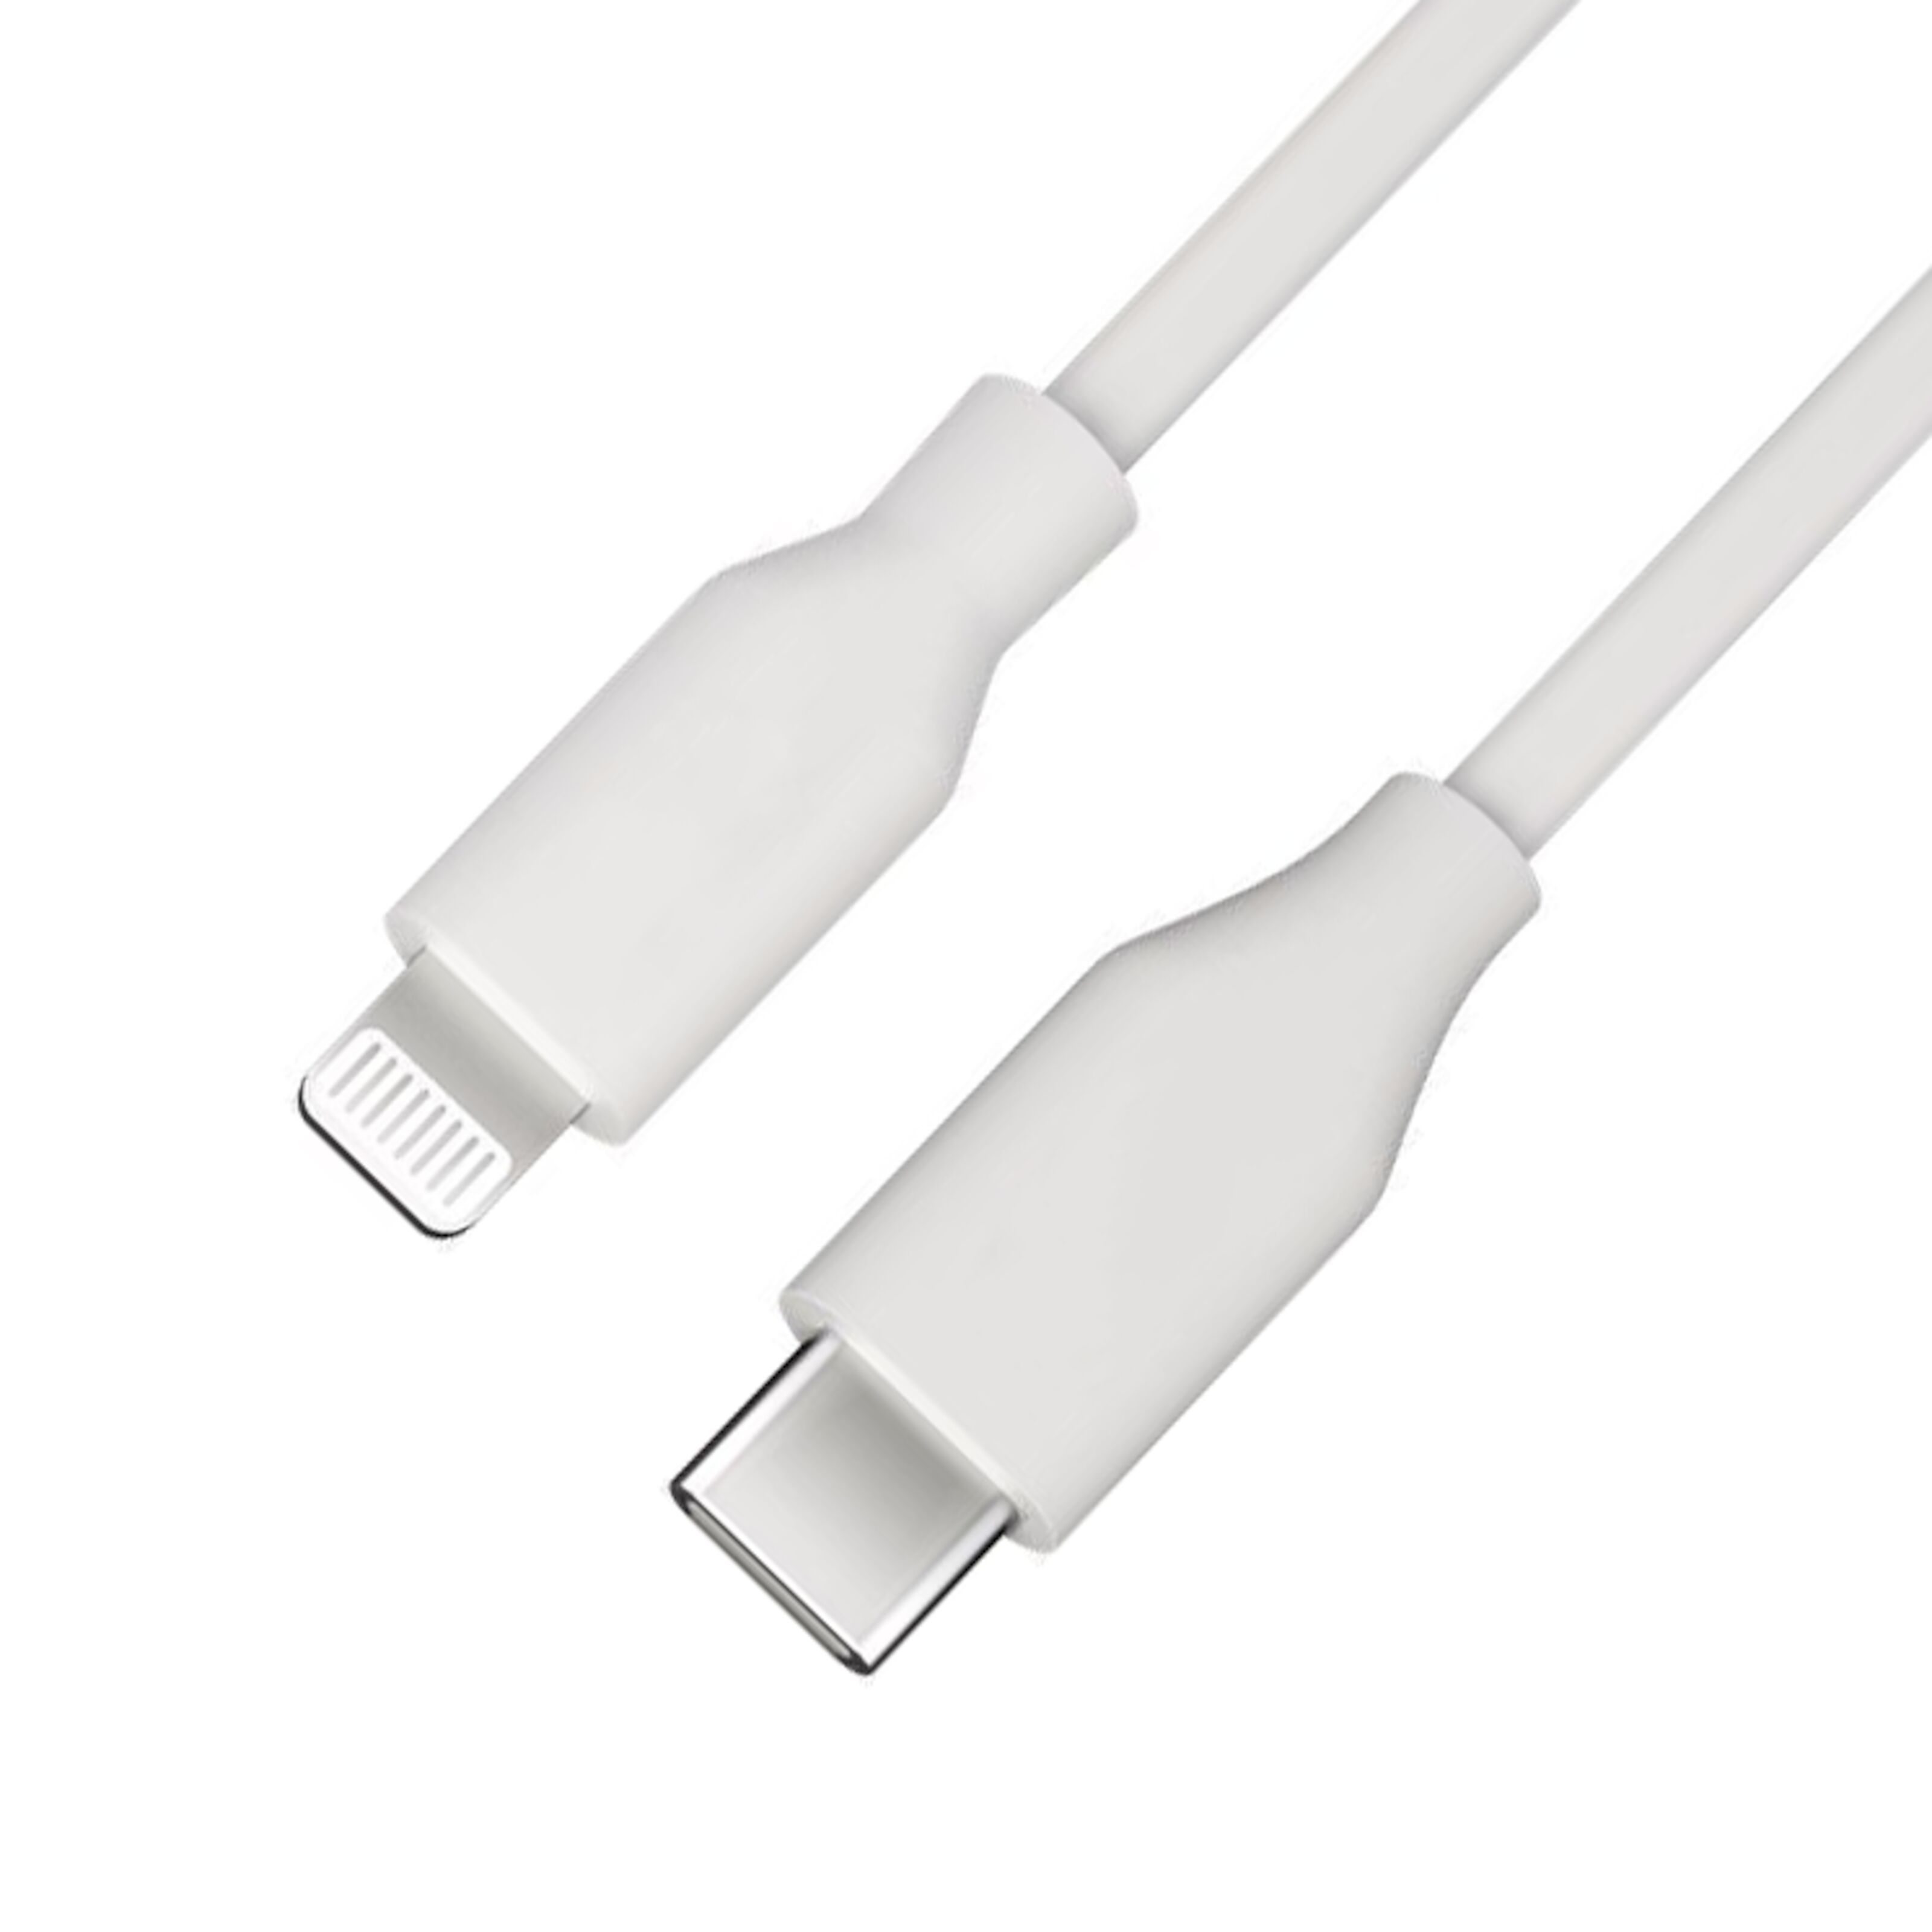 Linocell USB-C-kabel - USB-C kablar